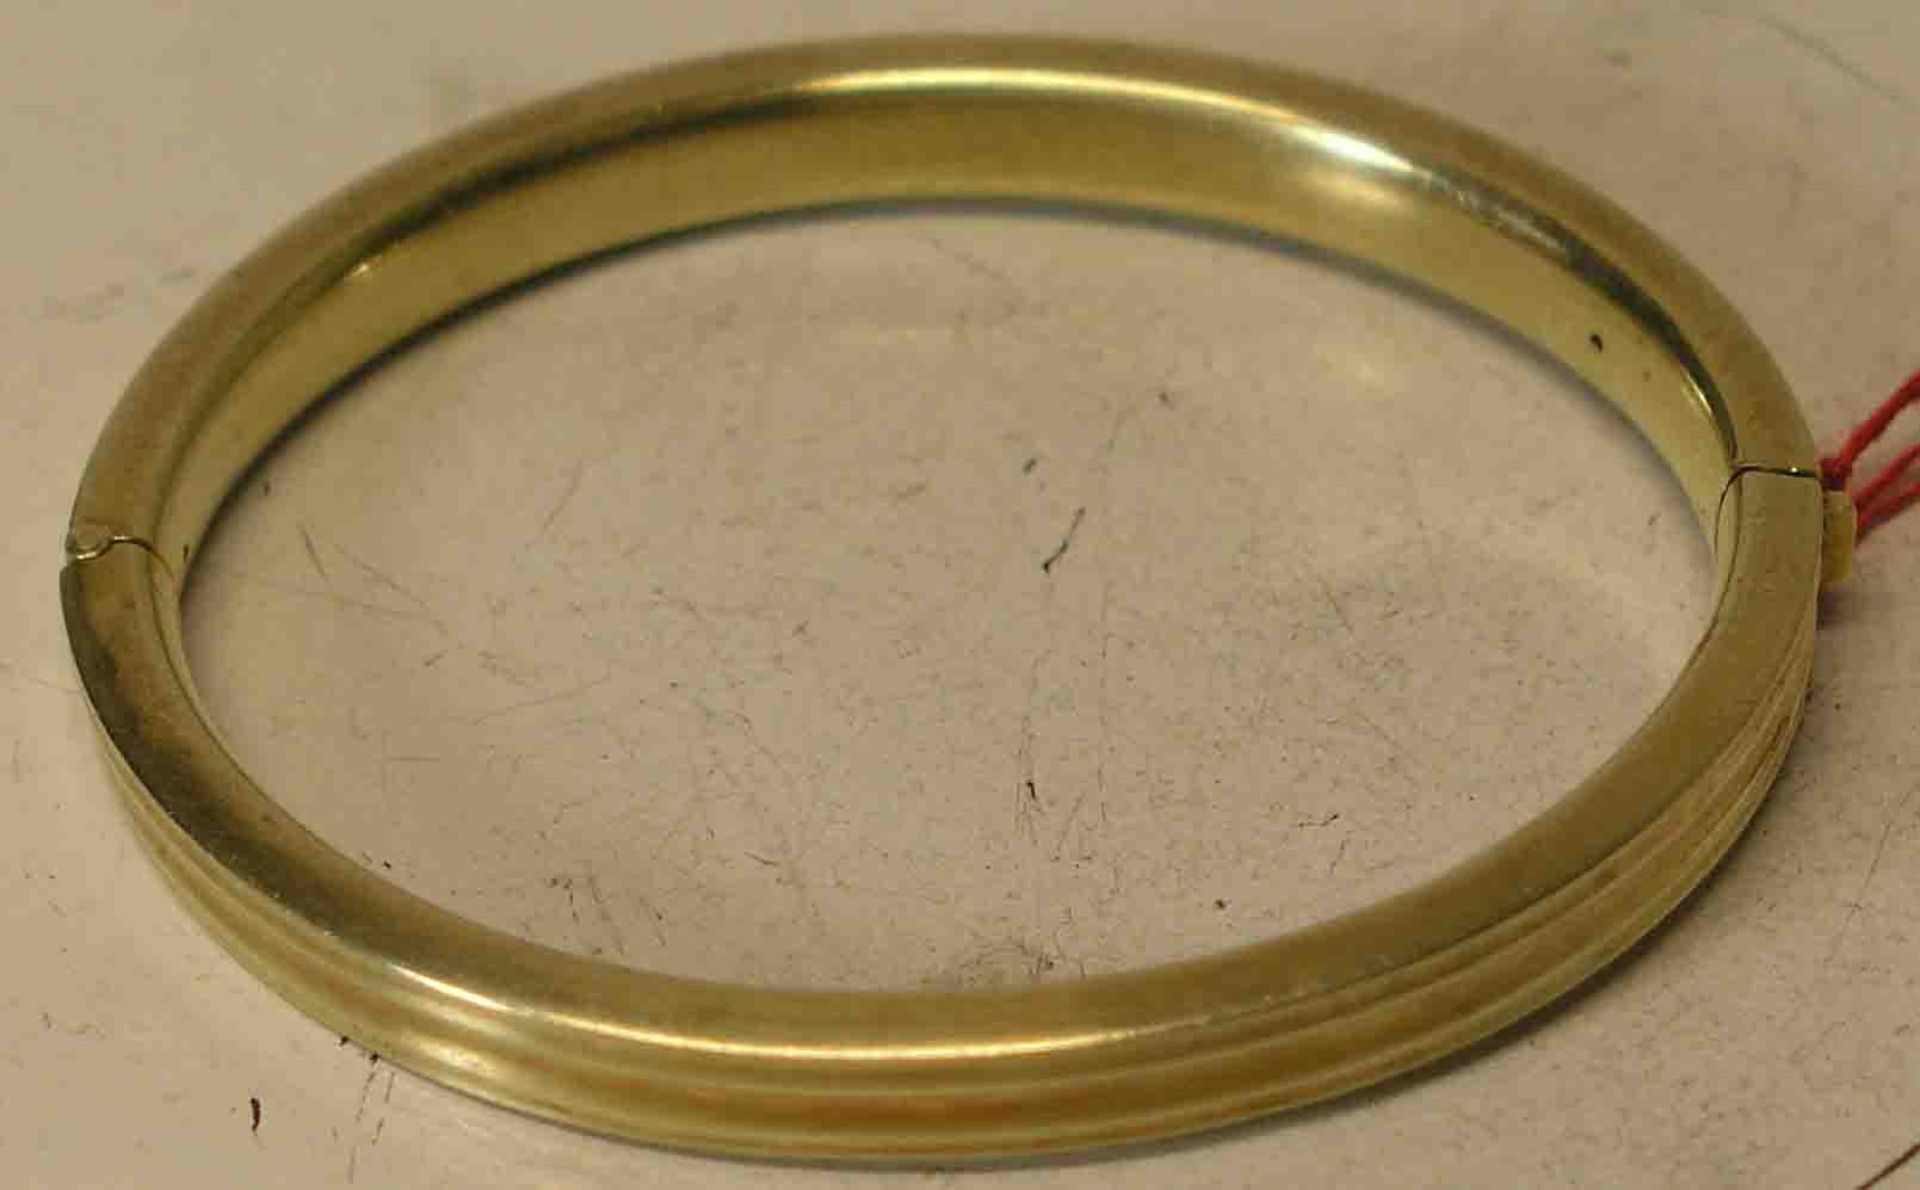 Armspange. 14 kt. Gold. Durchmesser: 7cm. 18,8 Gramm.- - -20.17 % buyer's premium on the hammer